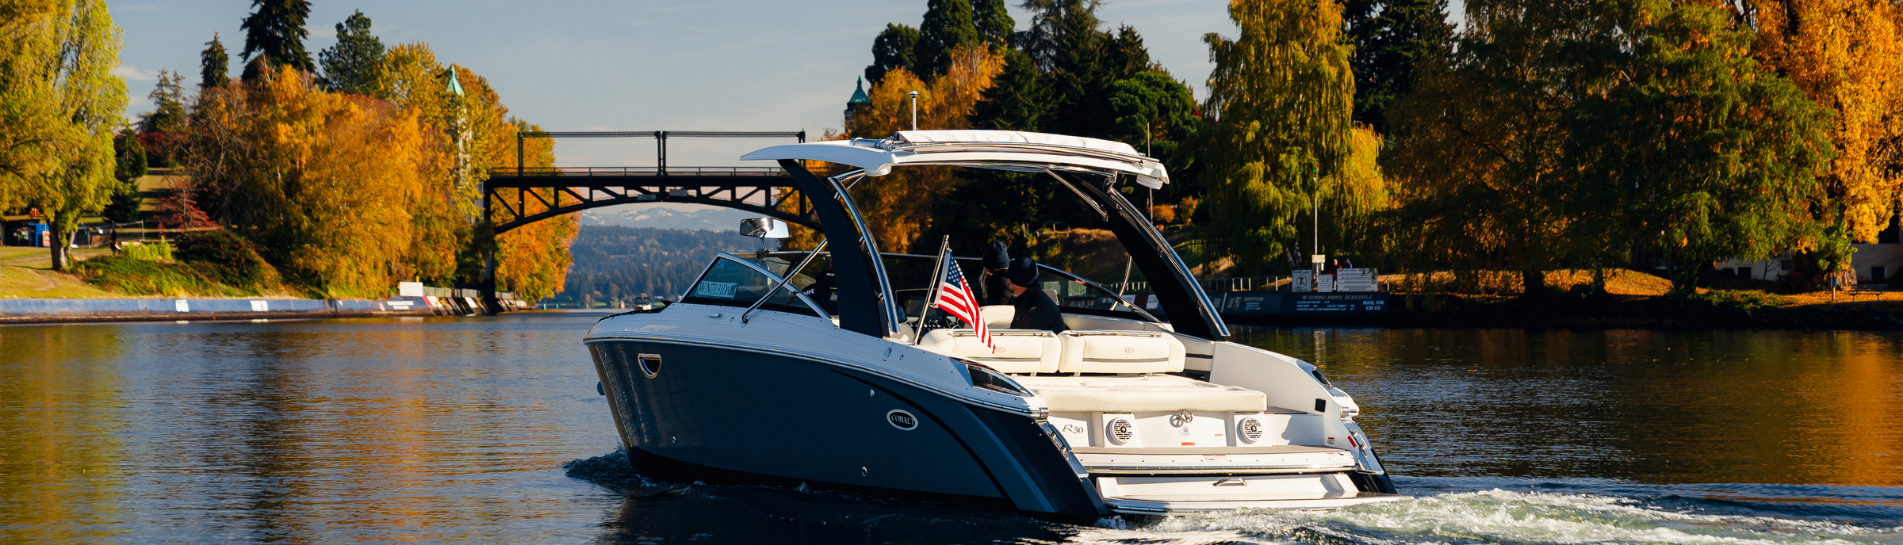 2022 Malibu Boats 23LSV for sale in Seattle Boat Co., Seattle, Washington